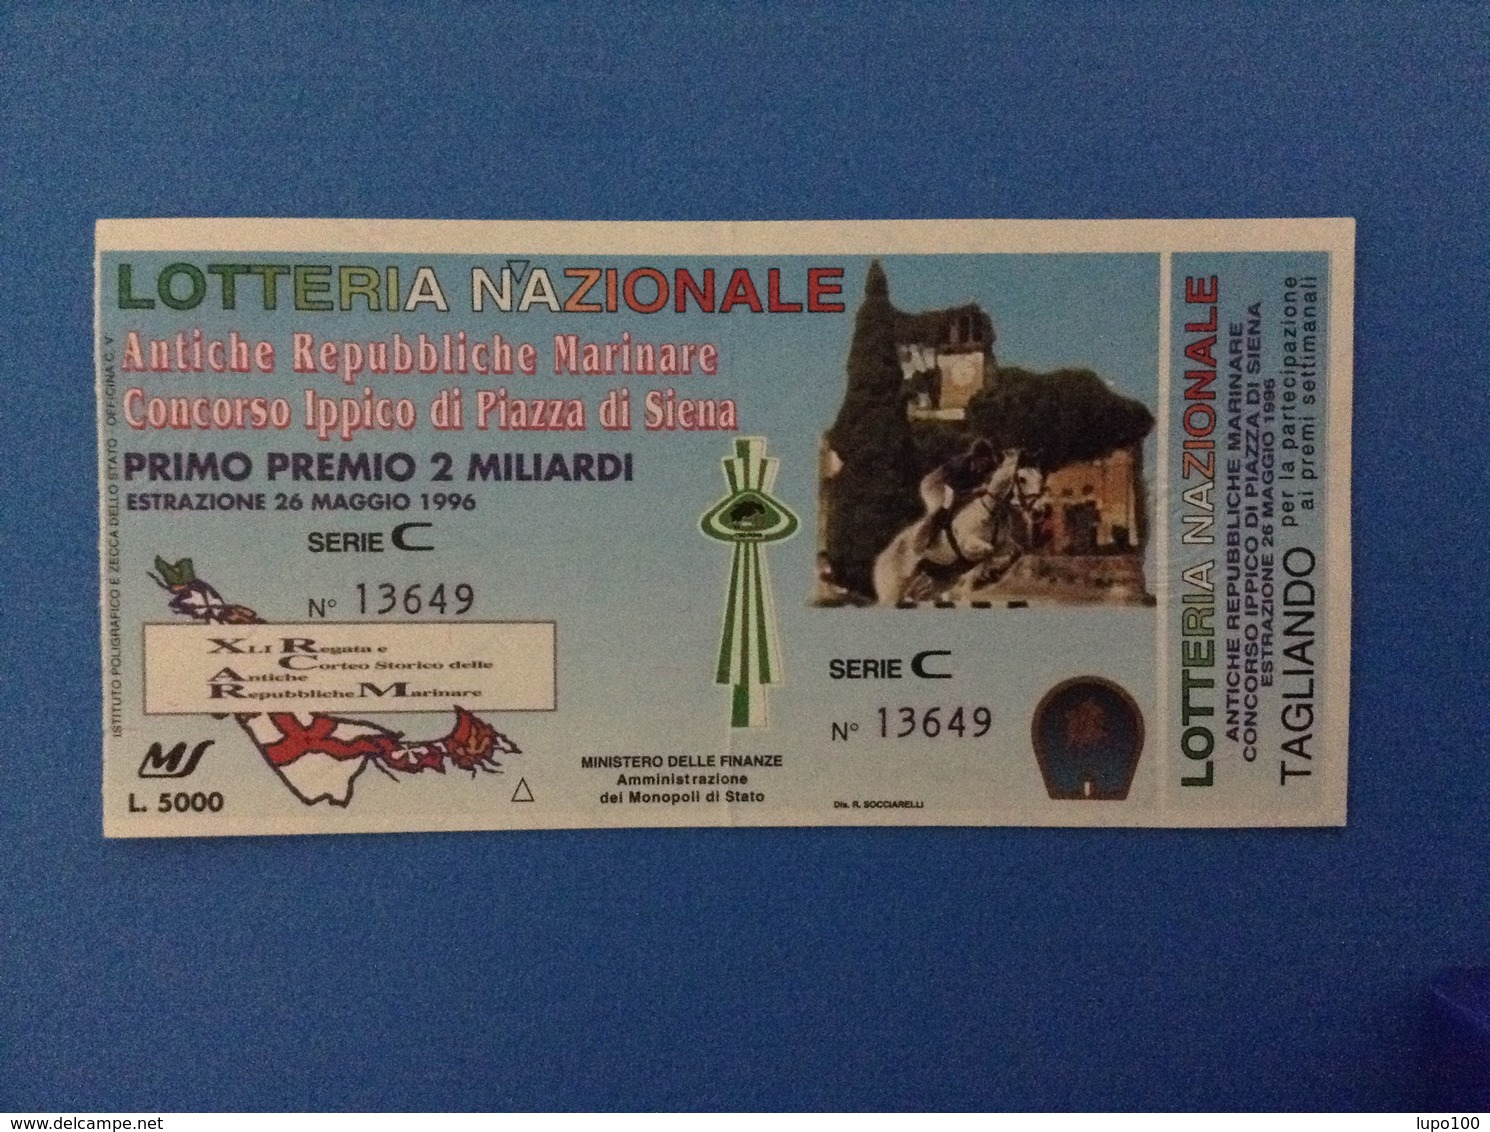 1996 BIGLIETTO LOTTERIA NAZIONALE ANTICHE REPUBBLICHE MARINARE CONCORSO IPPICO PIAZZA DI SIENA - Lottery Tickets